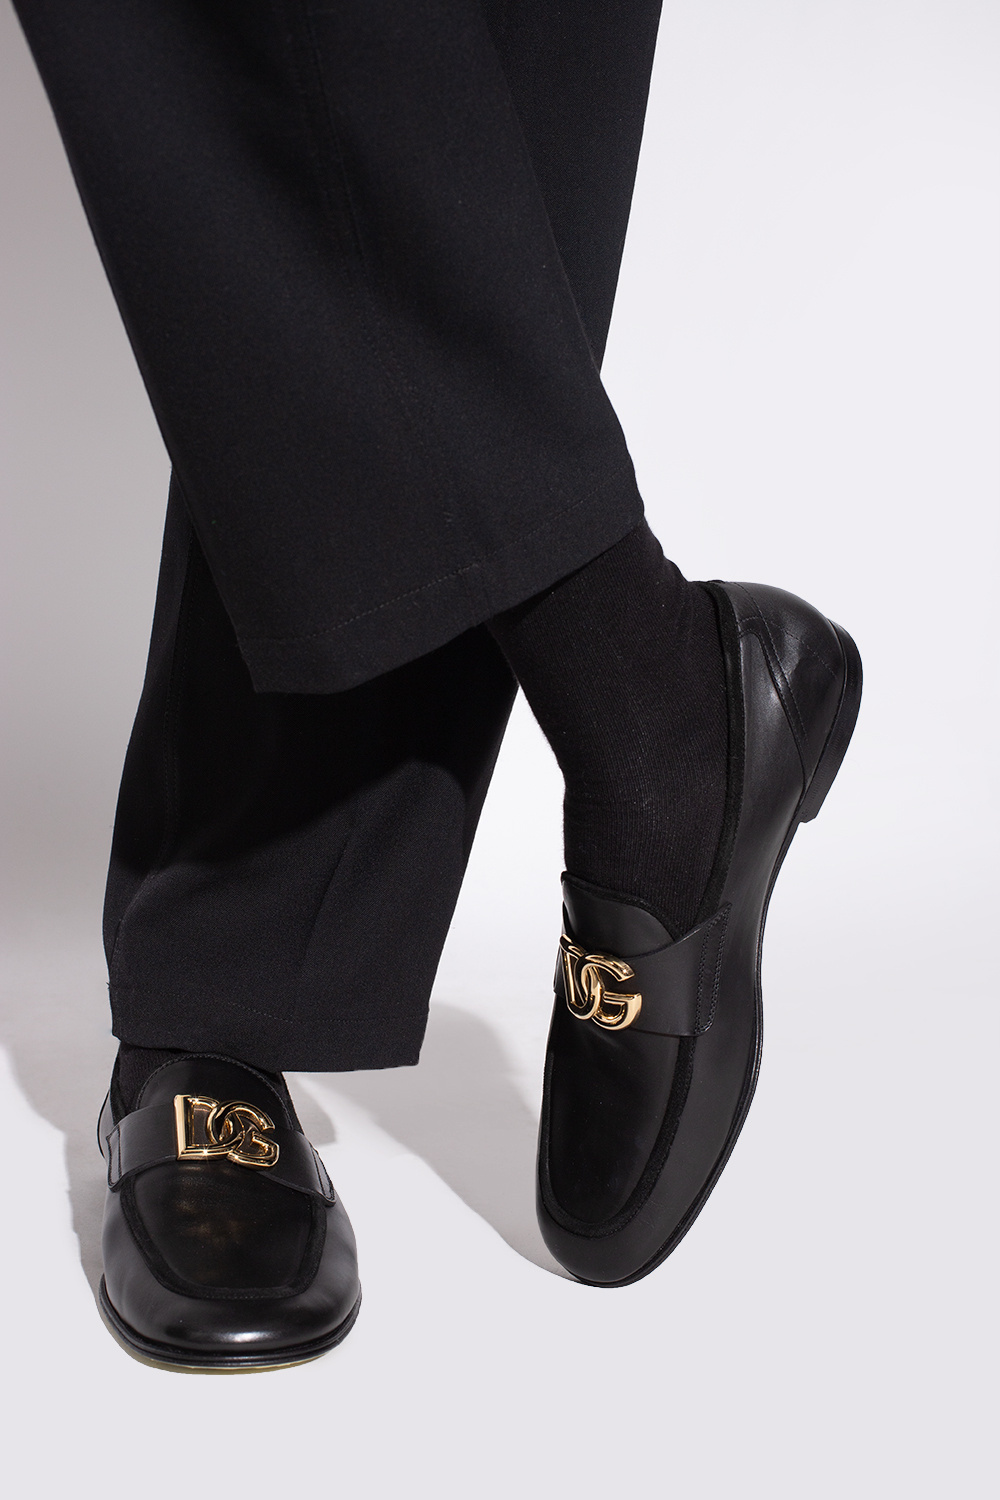 Dolce & Gabbana MEN JEWELERY BRACELETS Leather loafers